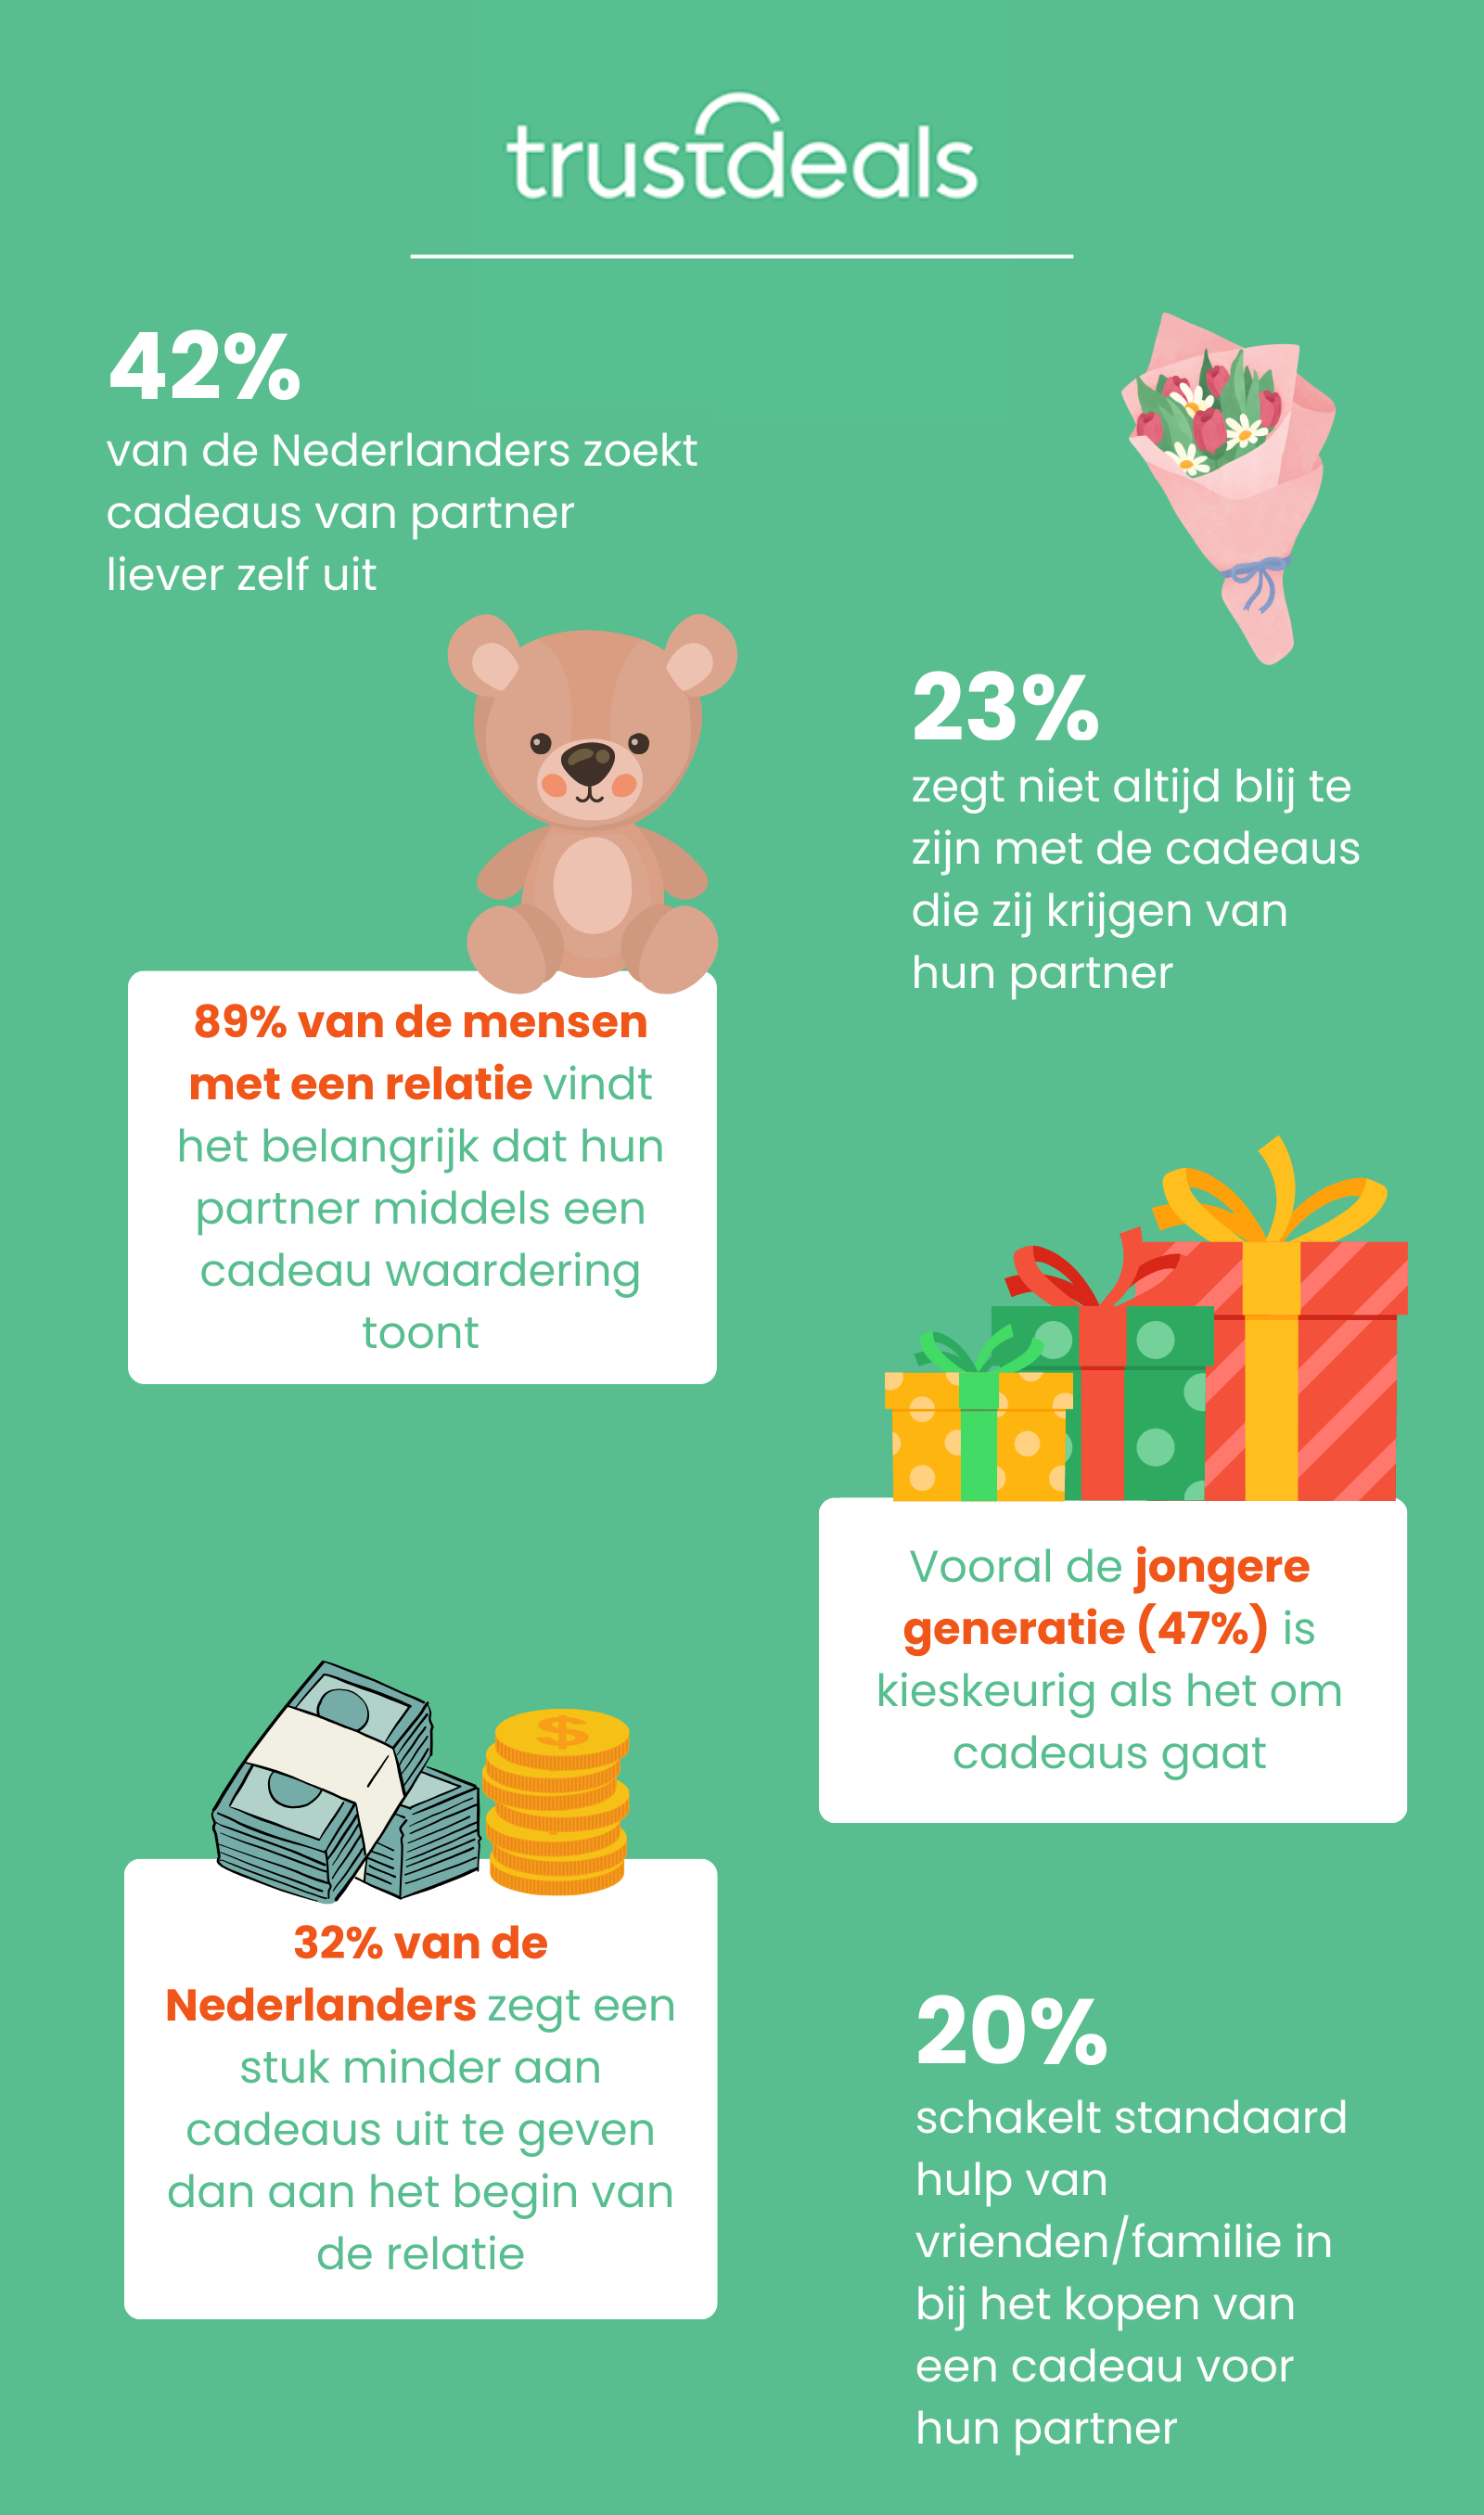 TrustDeals onderzoek Onderzoek: 1 op de 3 Nederlanders teleurgesteld door cadeau van partner